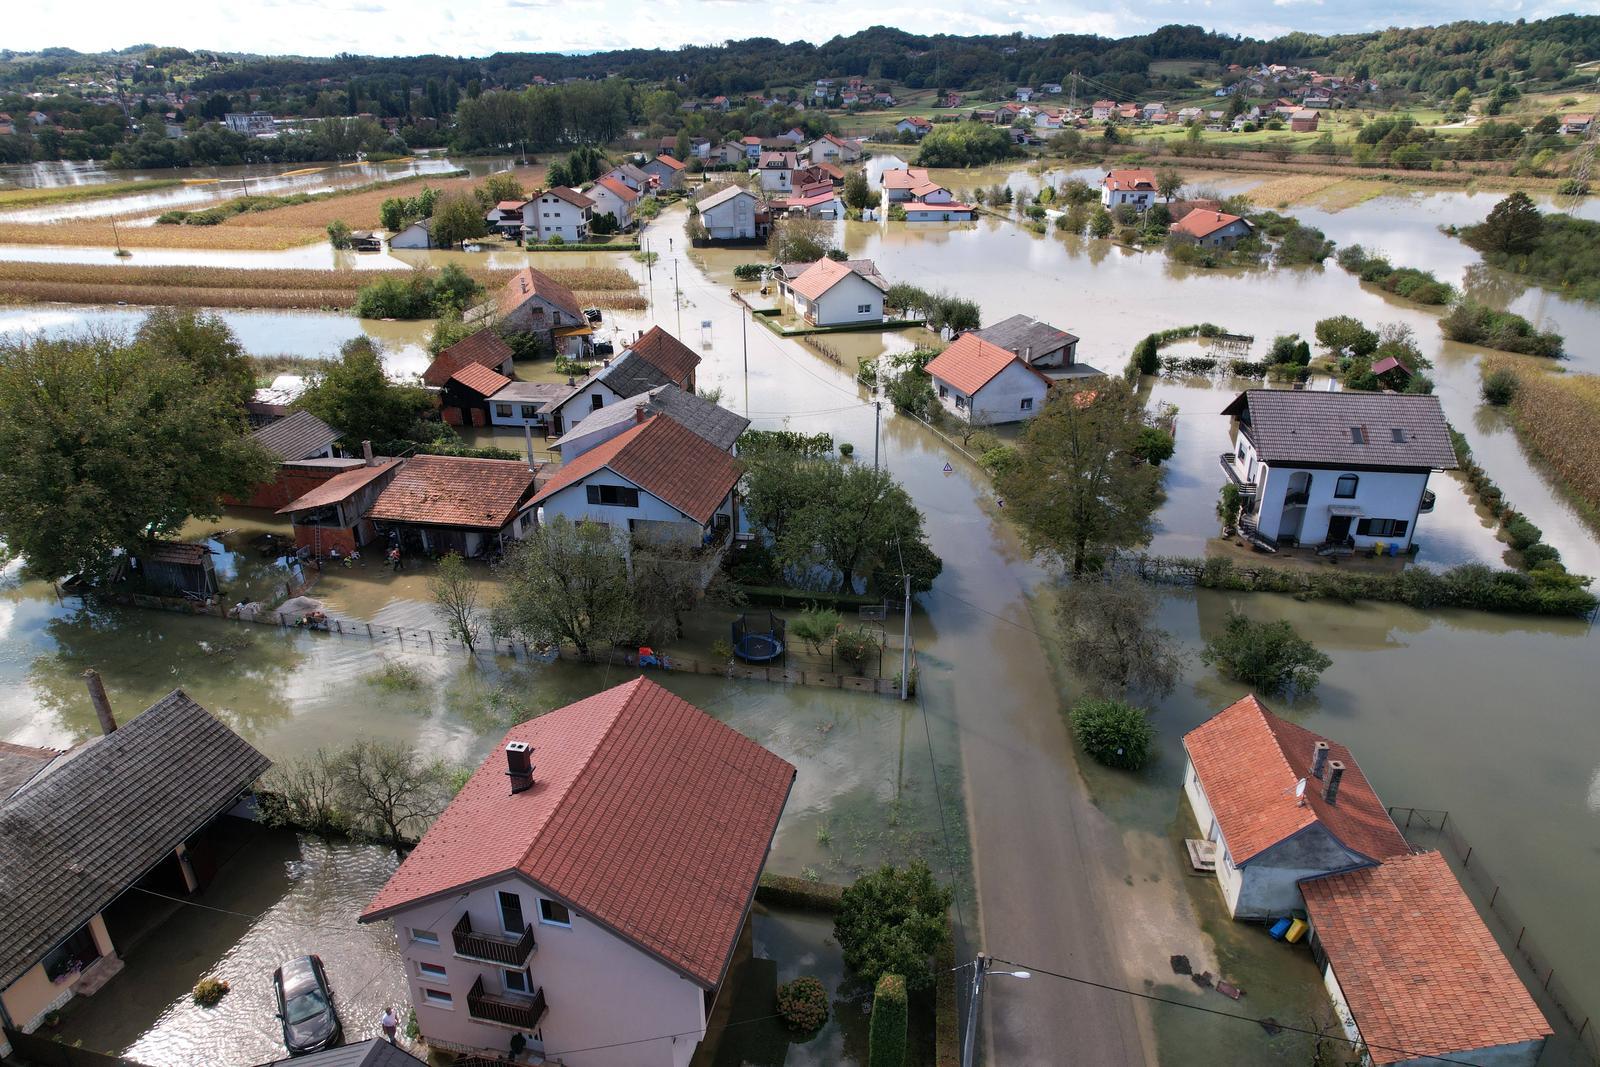 Poplave u Hrvatskoj: Pogledajte fotografije iz zraka